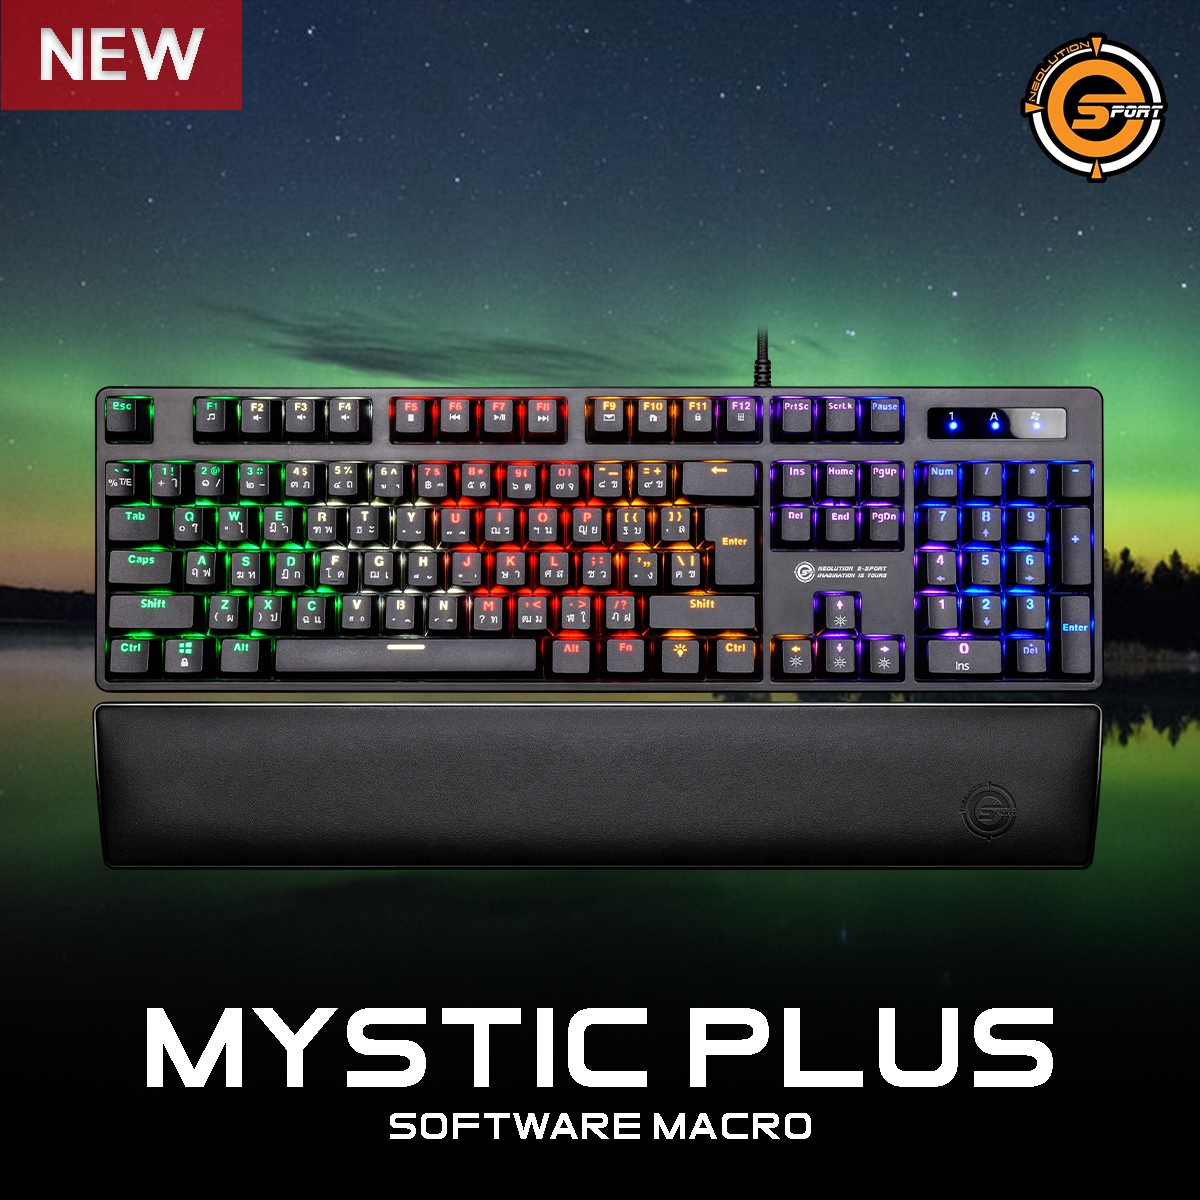 Bàn phím gaming Neolution E-Sport Gaming Keyboard Mystic Plus sẽ giúp bạn trải nghiệm game một cách mượt mà hơn. Với thiết kế sang trọng và đầy tính năng, bàn phím gaming của chúng tôi được thiết kế để đáp ứng mọi yêu cầu của bạn. Hãy cập nhật ngay để trải nghiệm trò chơi thú vị hơn!